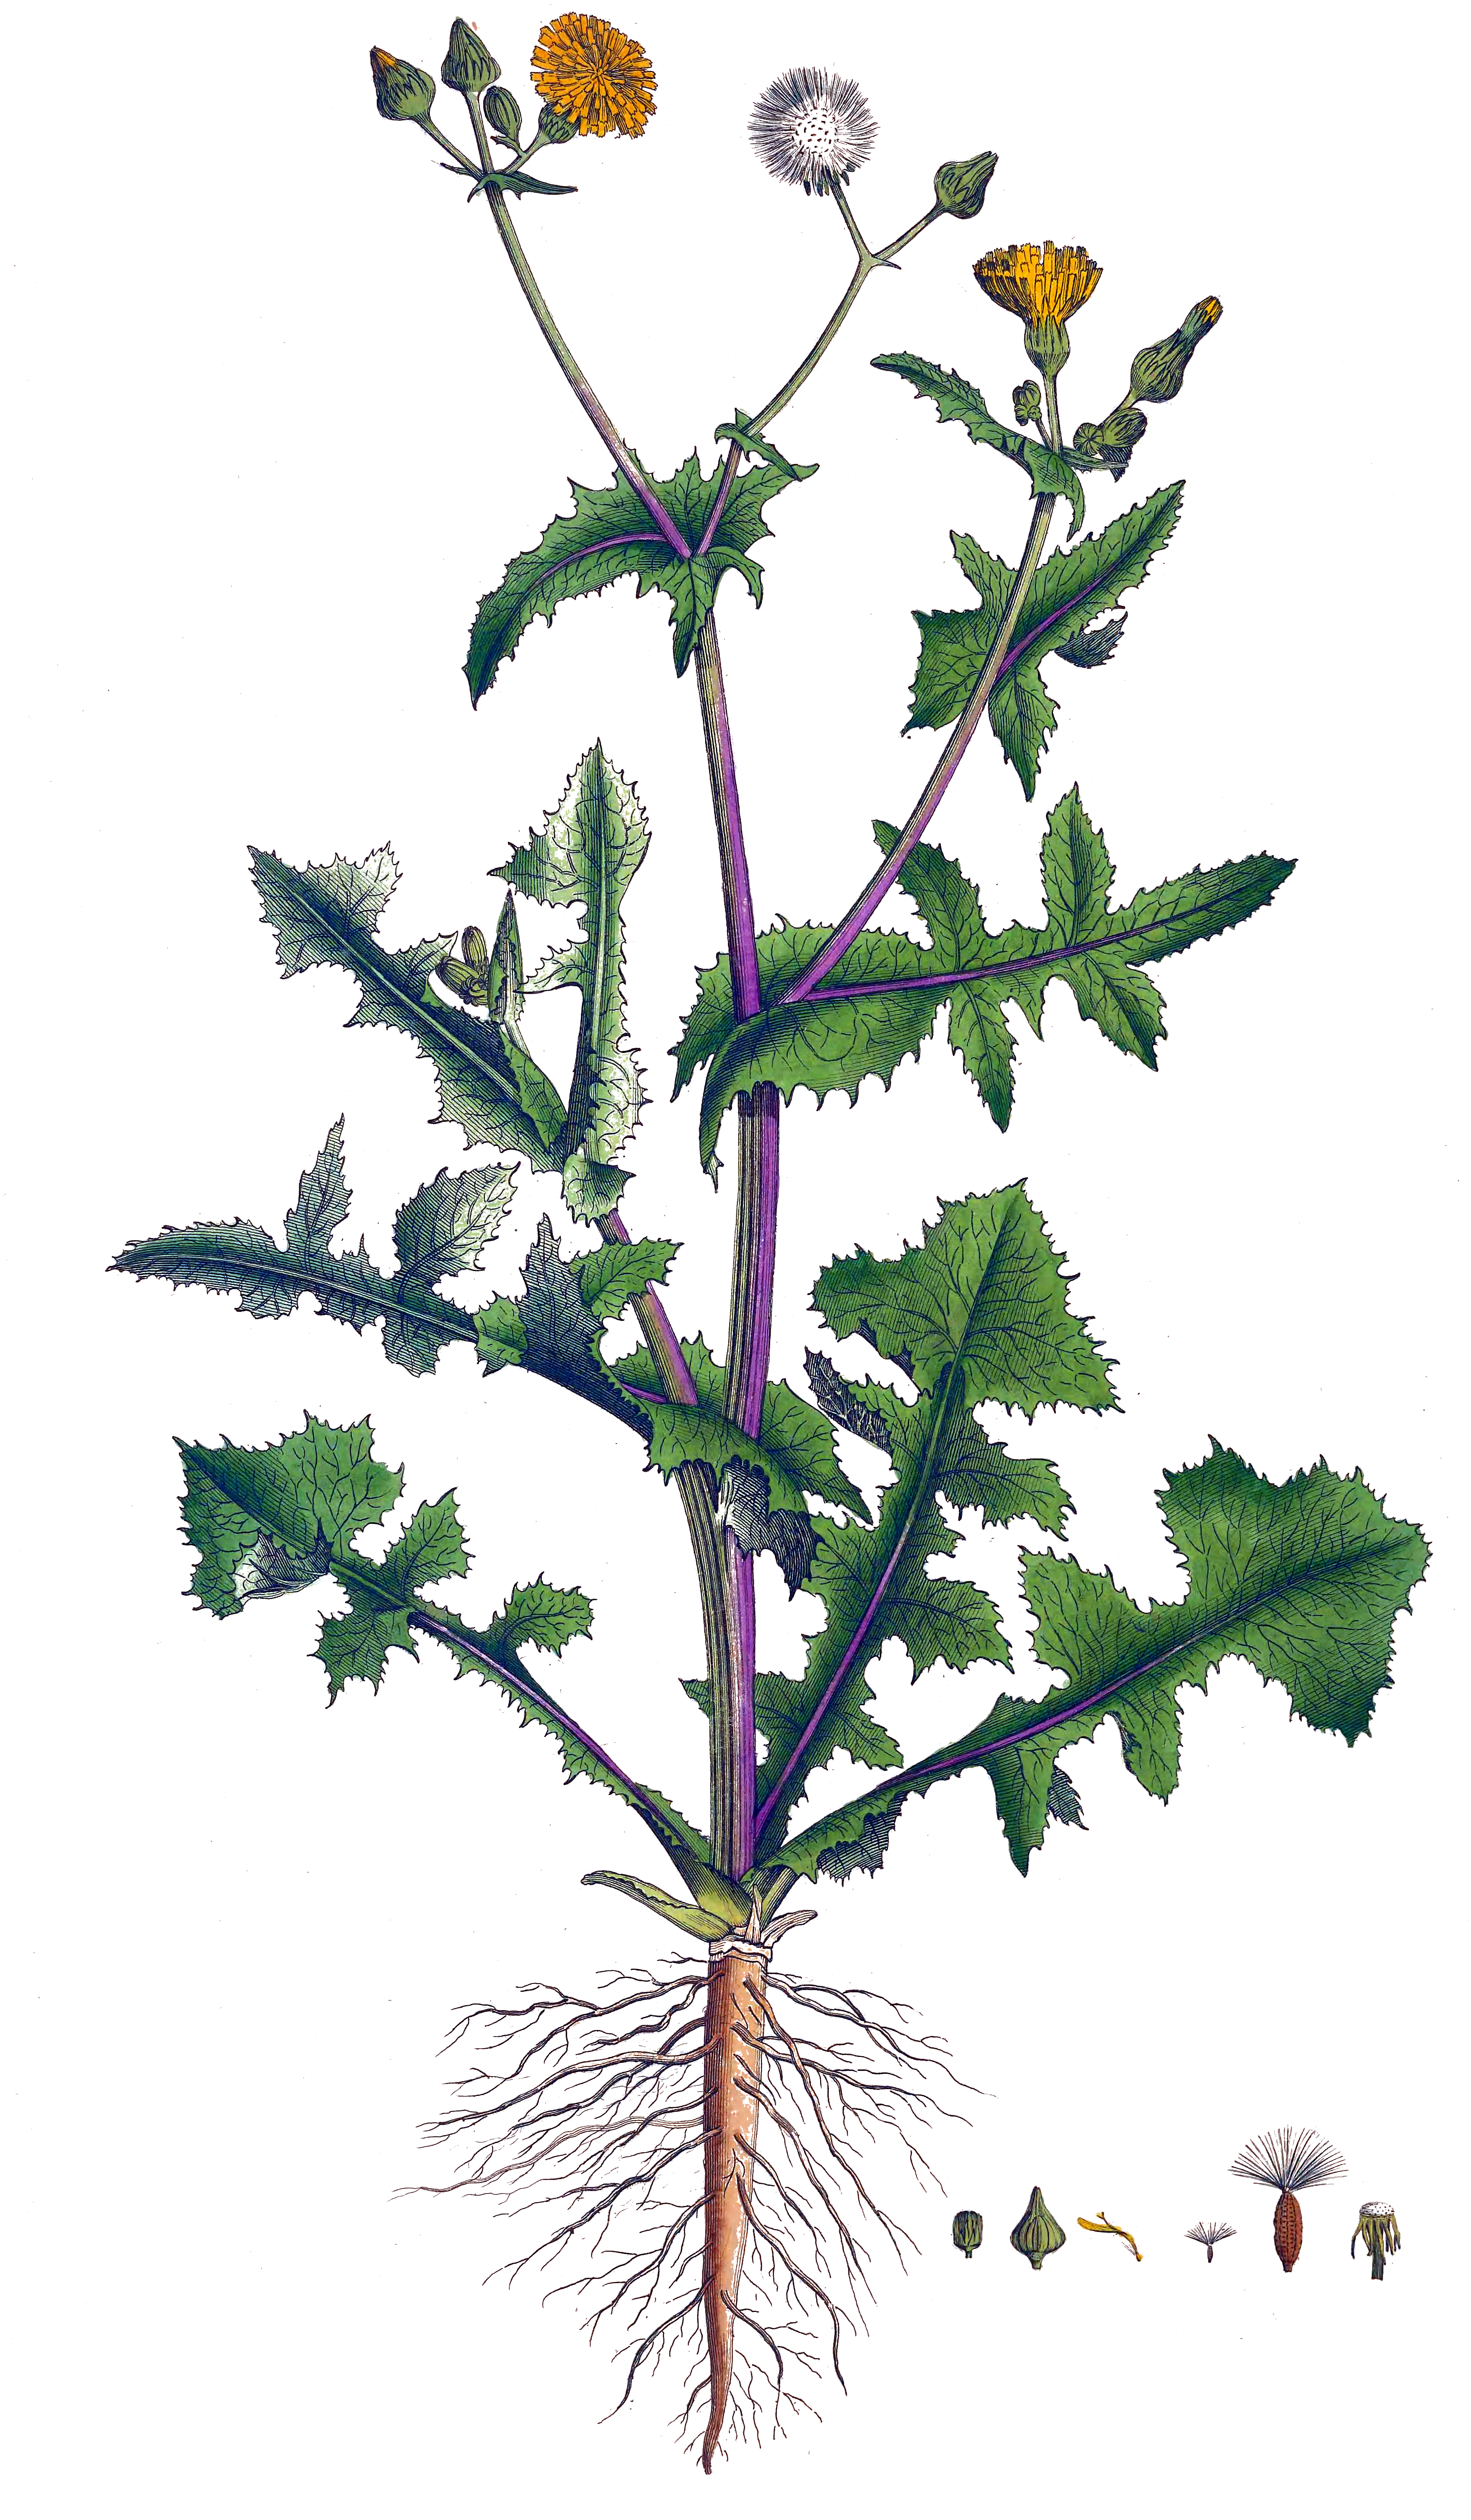 Historische Abbildung von Sonchus oleraceus (Kohl-Gänsedistel - Smooth Sow-thistle). Das Bild zeigt Blatt, Bluete, Frucht und Same. ---- Historical Drawing of Sonchus oleraceus (Kohl-Gänsedistel - Smooth Sow-thistle). The image is showing leaf, flower, fruit and seed.(Sonchus oleraceus,Kohl-Gänsedistel,Smooth Sow-thistle,Sonchus ciliatus,Sonchus lacerus,Sonchus oleraceus,Sonchus royleanus,Sonchus subbipinnatifidus,Kohl-Gaensedistel,Gewoehnliche Gaensedistel,Smooth Sow-thistle,Annual Sow Thistle,Hare's Colwort,Hare's Thistle,Milk Thistle,Milkweed,Milky Tassel,Swinies,Colwort,Common Milkthistle,Common Sowthistle,Sonchus,Gänsedistel,Sowthistle,Asteraceae,Korbblütengewächse,Daisy family,Blatt,Bluete,Frucht,Same,leaf,flower,fruit,seed,Curtis (1777-1798))